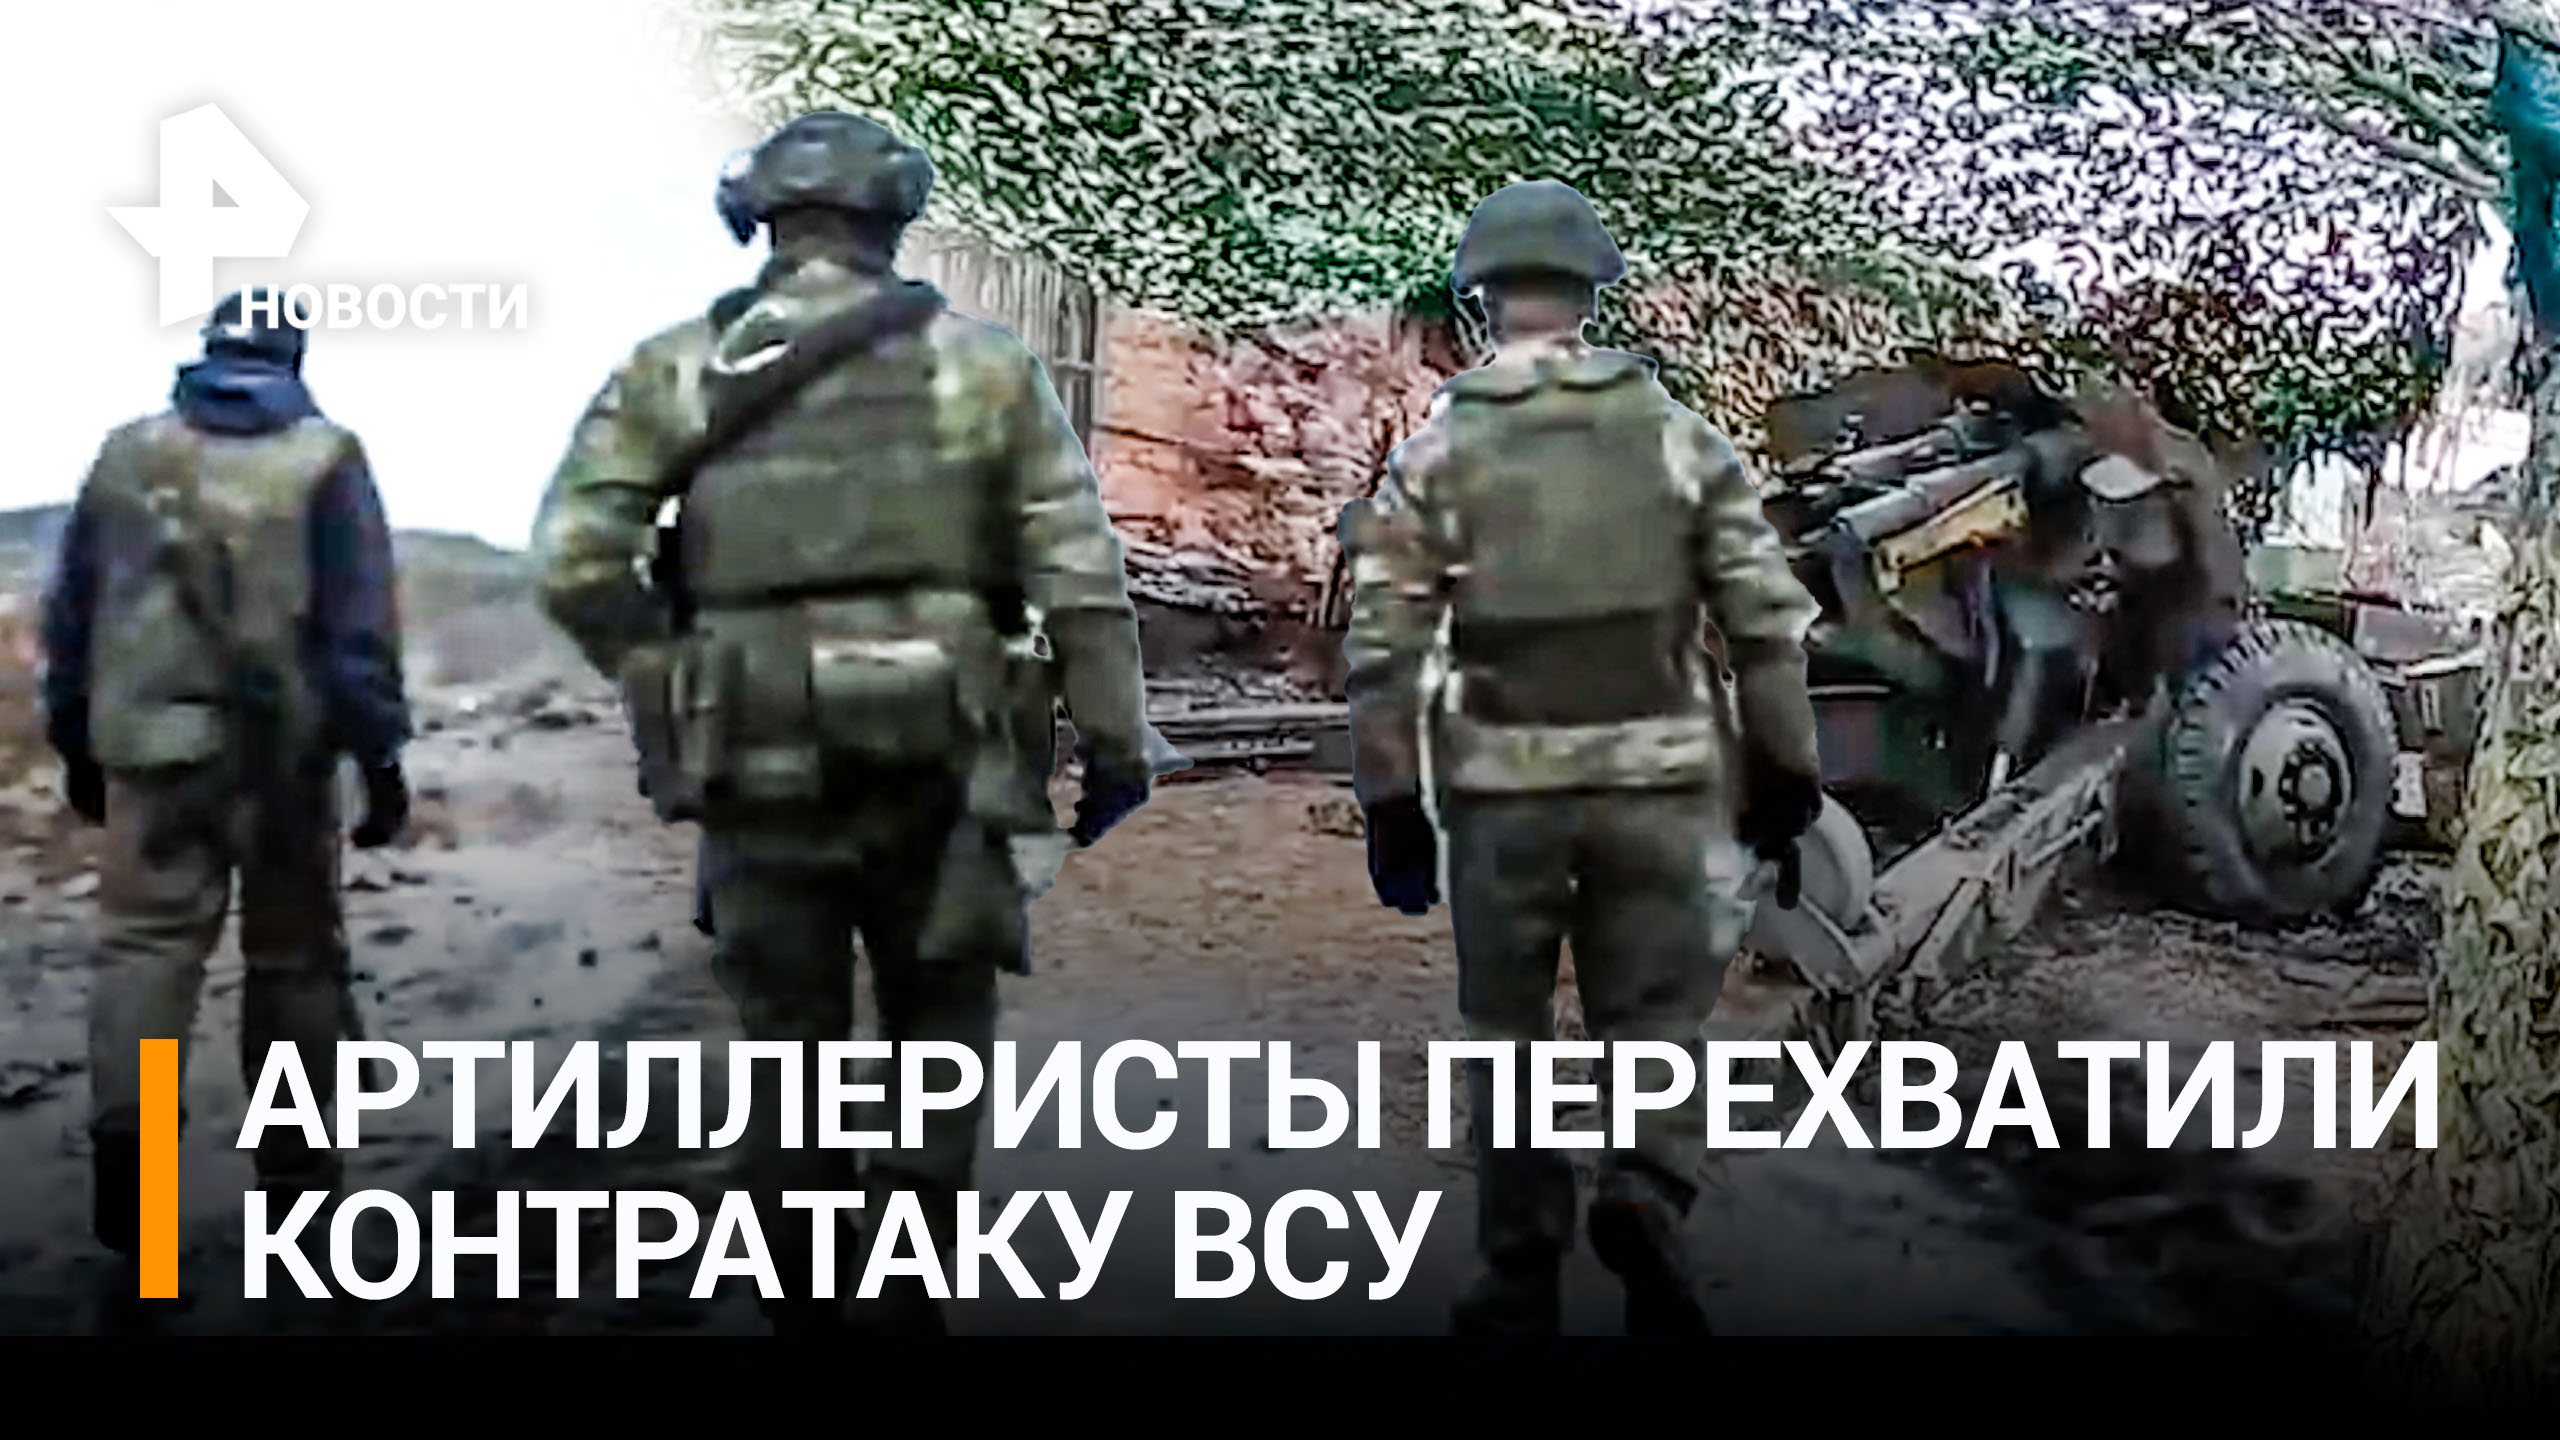 Как артиллеристы разбили ВСУ во время попытки контратаки на Опытное / РЕН Новости